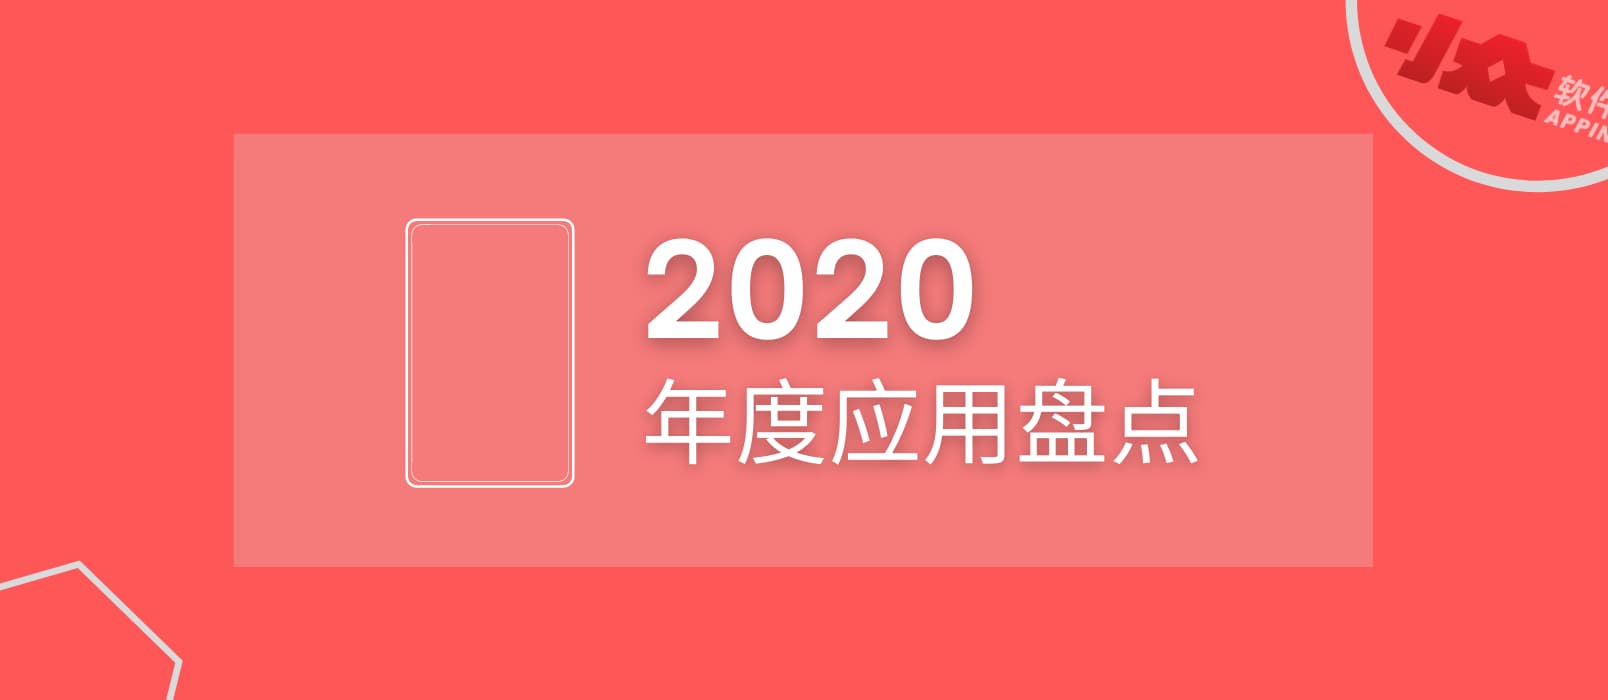 2020 年度应用盘点